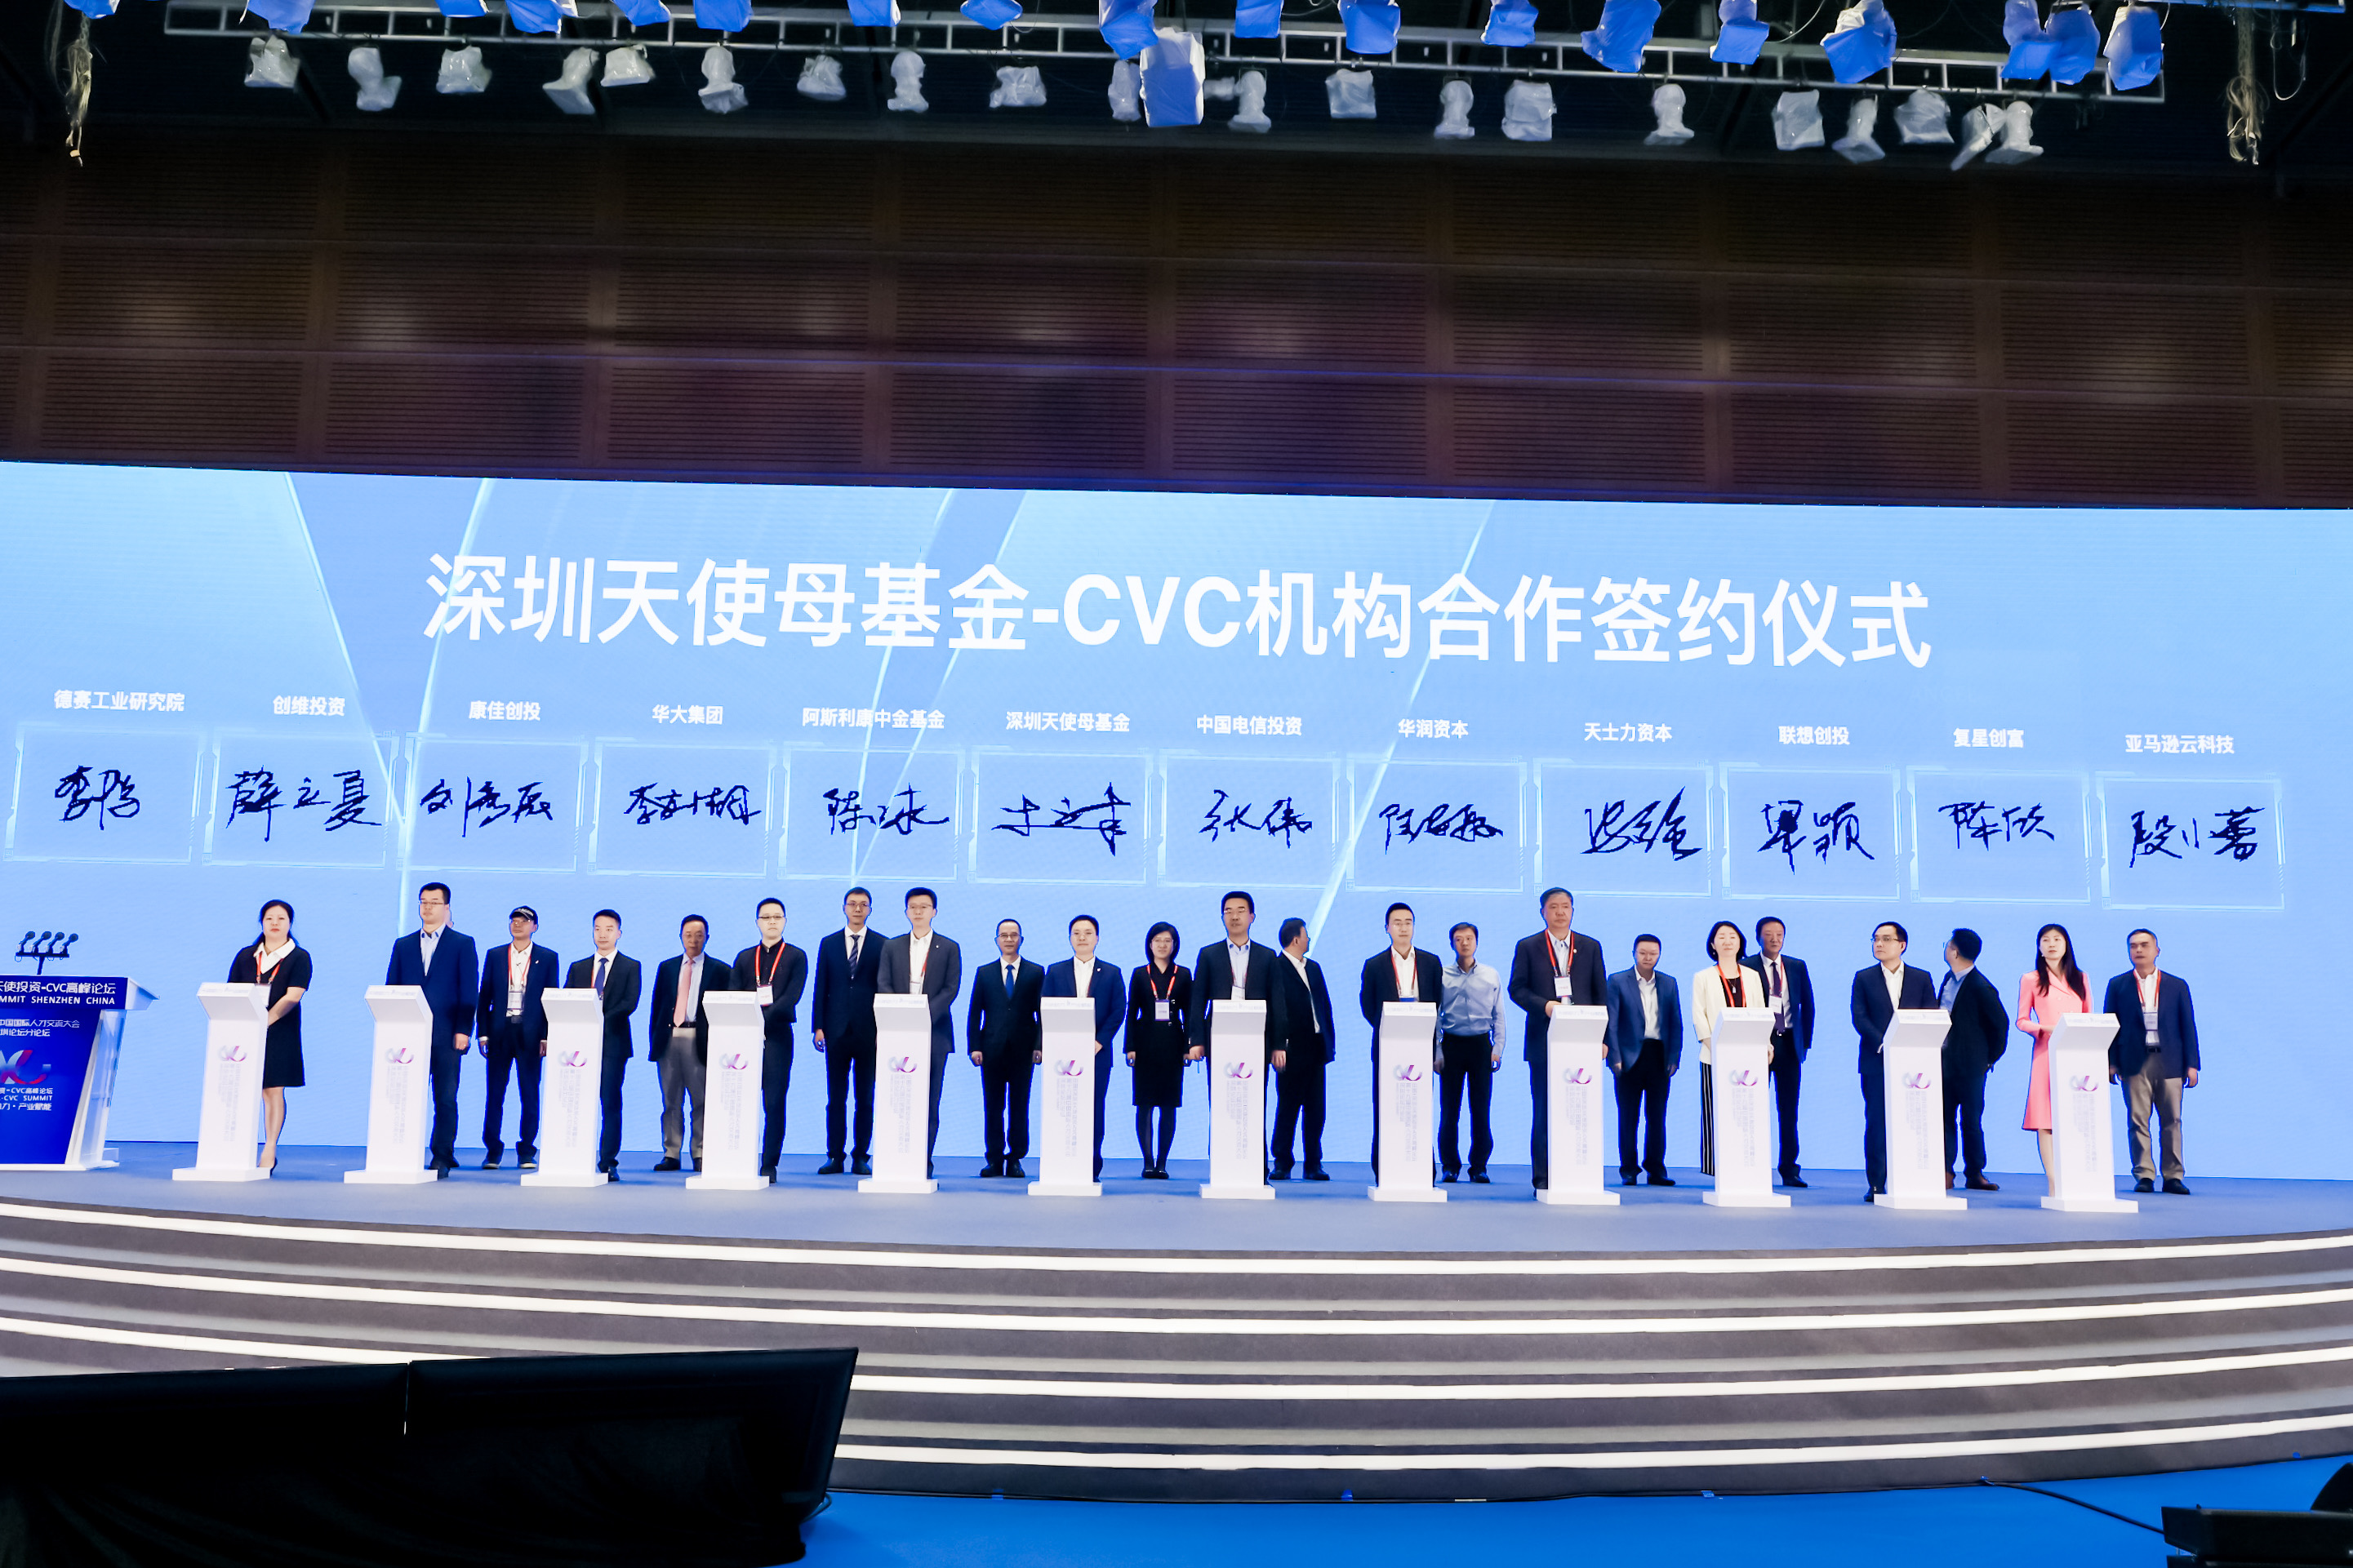 “天使助力产业赋能”地芯科技出席中国（深圳）天使投资-CVC高峰论坛